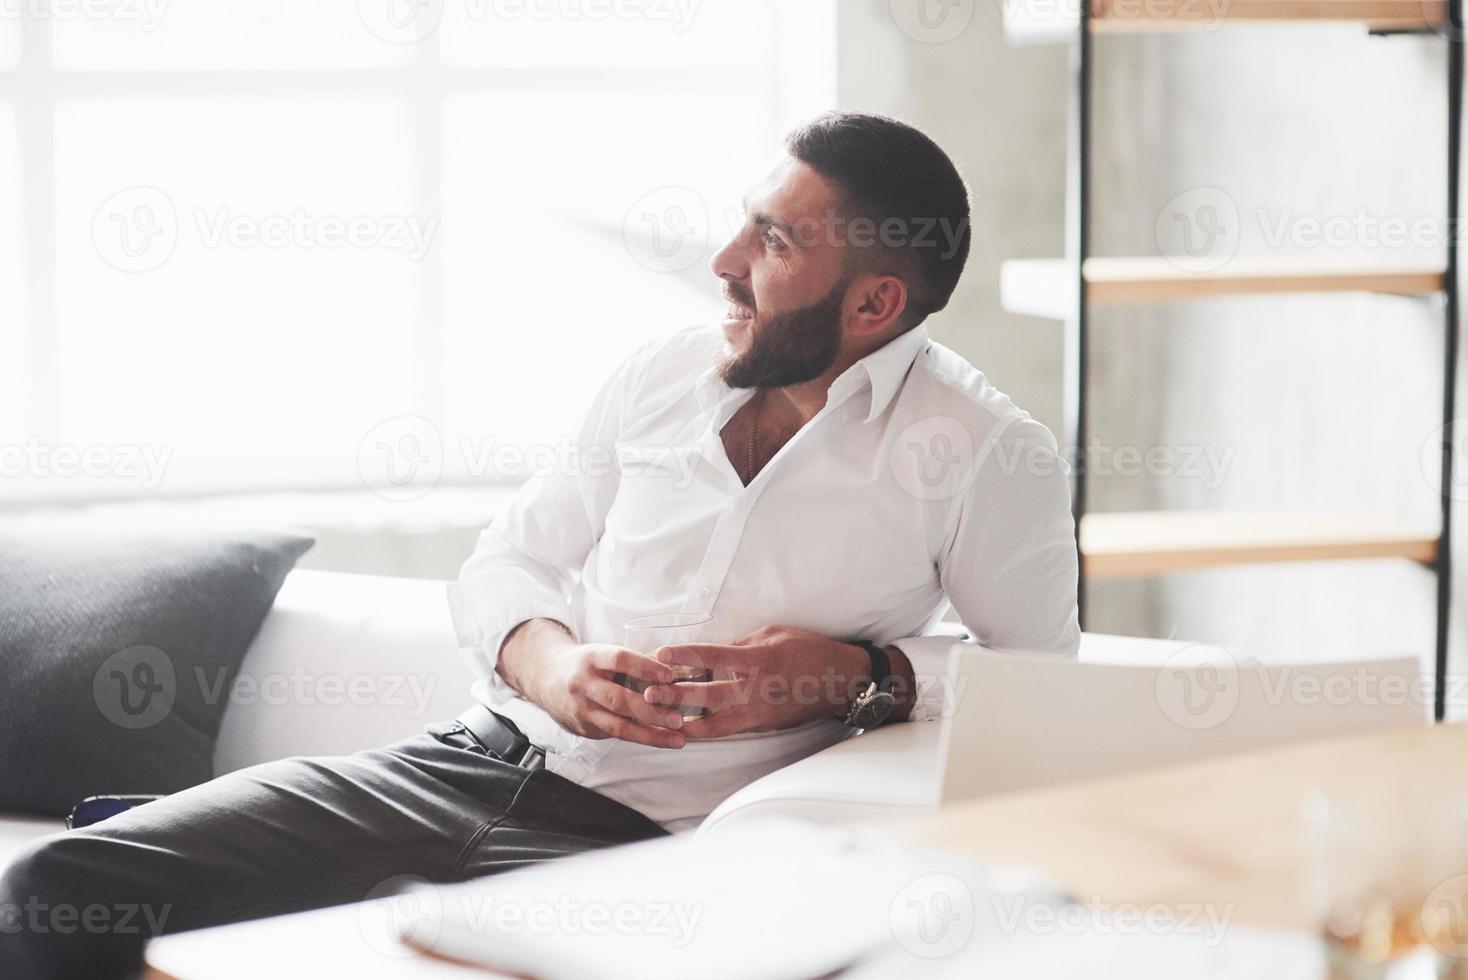 ler medan du vilar. foto av ung skäggig affärsman med whisky i handen sitta på den vita soffan